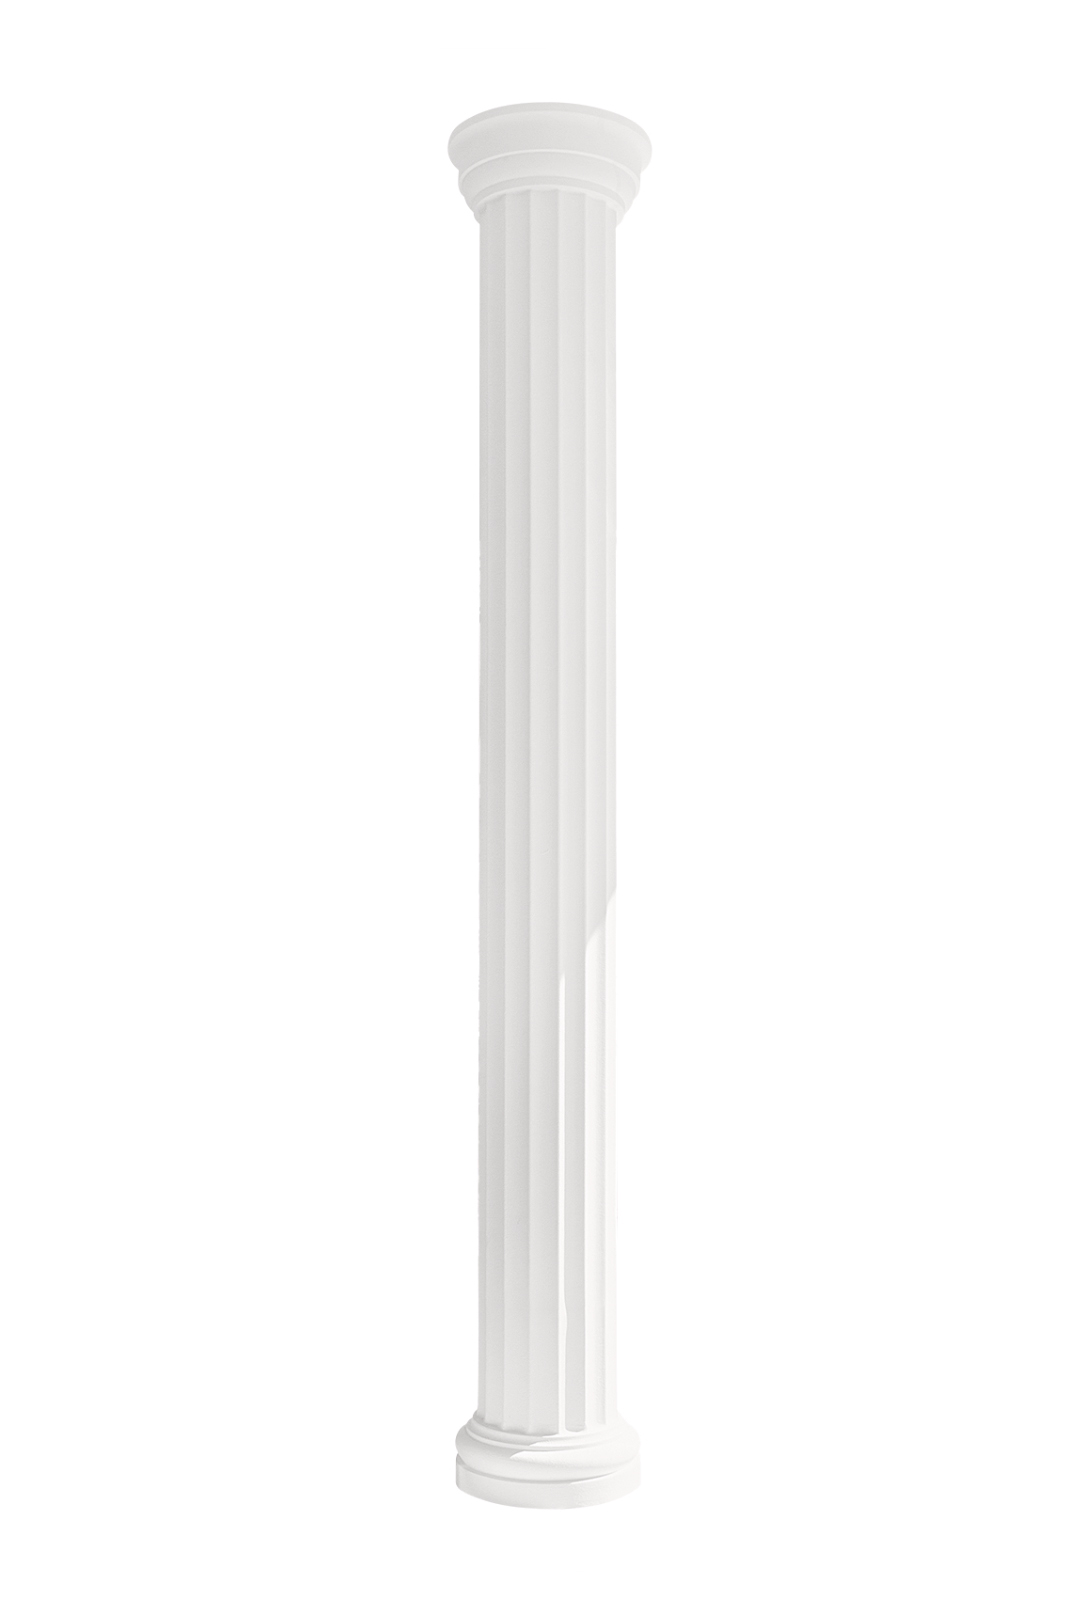 Säulen und Halbsäulen rund kanneliert Stuck Auswahl 240mm N3324 | HEXIM